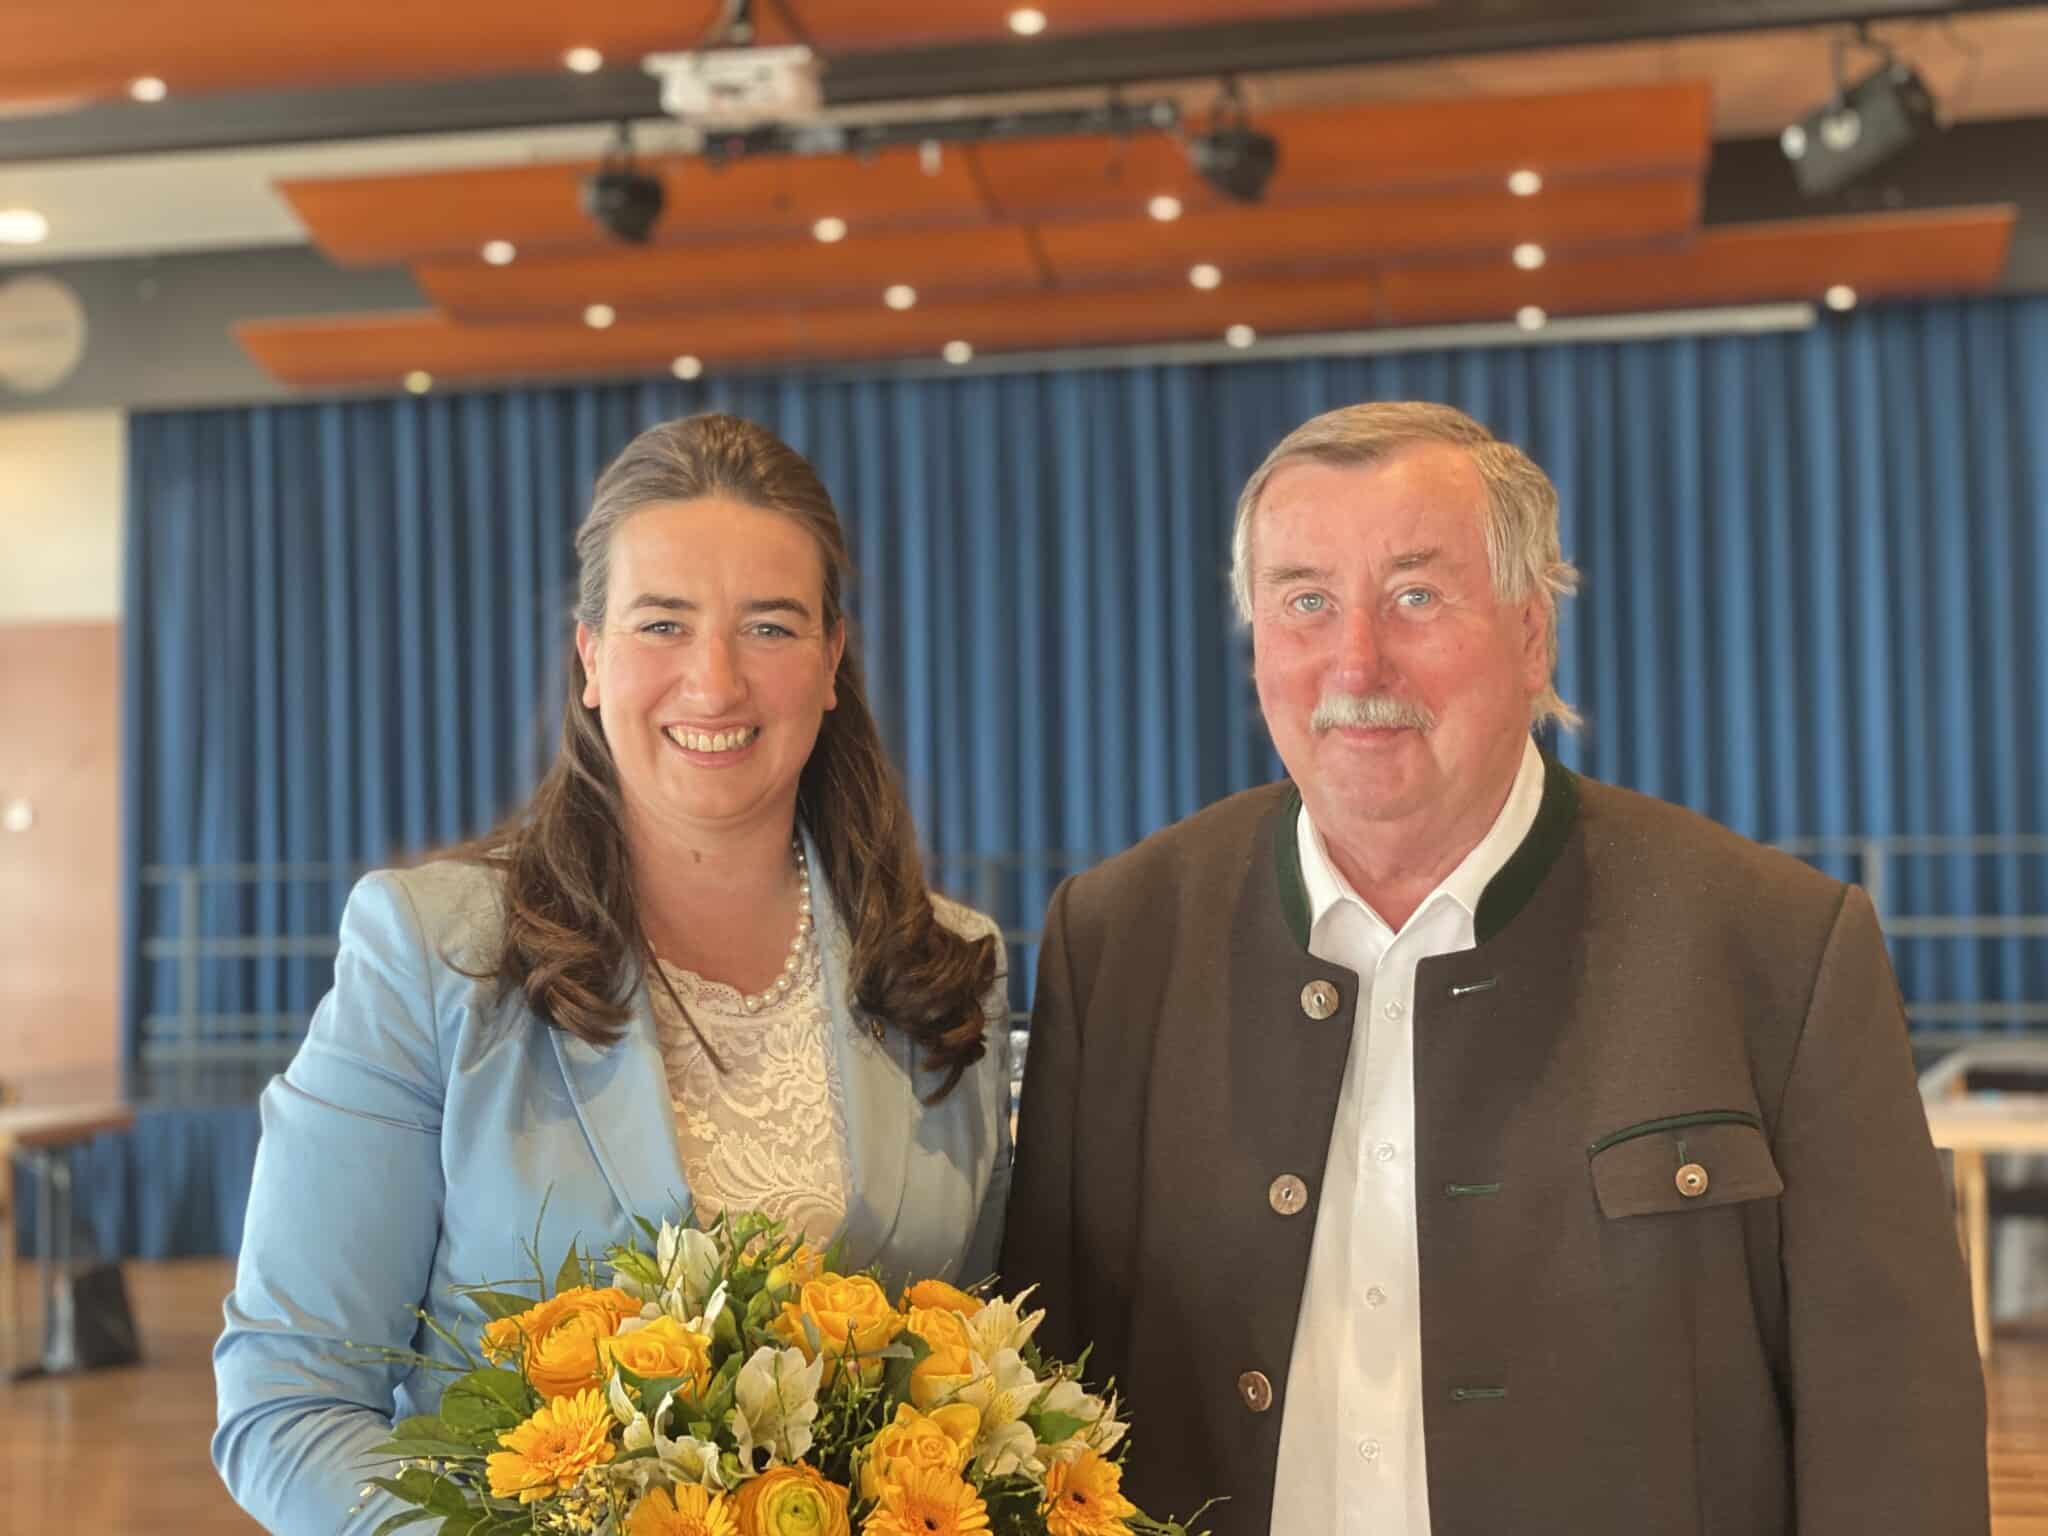 Eine starke Frau: Silvia Häusl-Benz wurde erneut zur Bürgermeisterin von Pörtschach gewählt. Am Bild mit ihrem stolzen Vater bei der Angelobung.